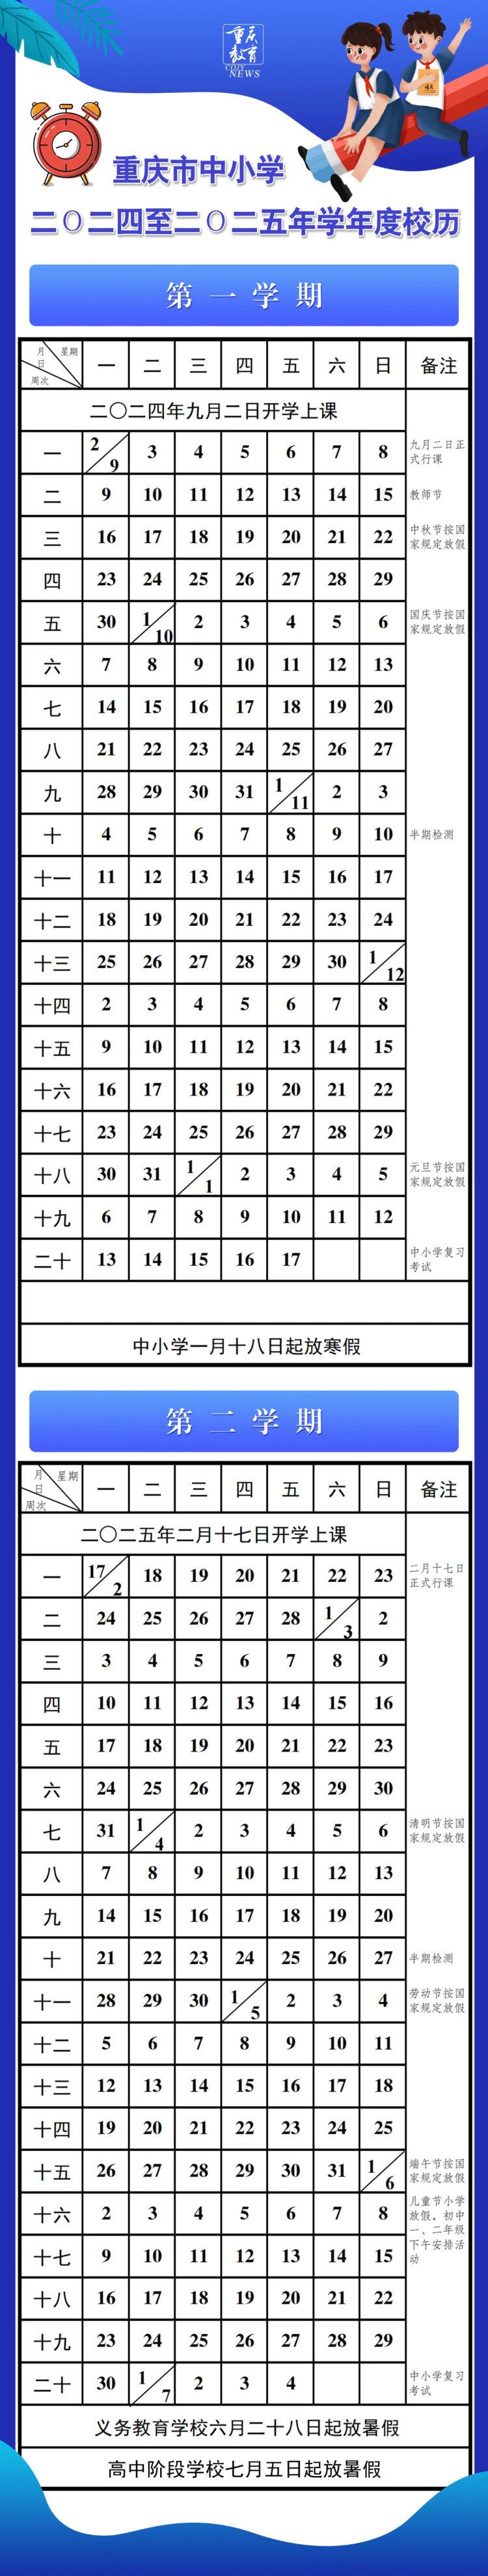 新学期开学时间、寒暑假时间定了！重庆中小学新校历上线